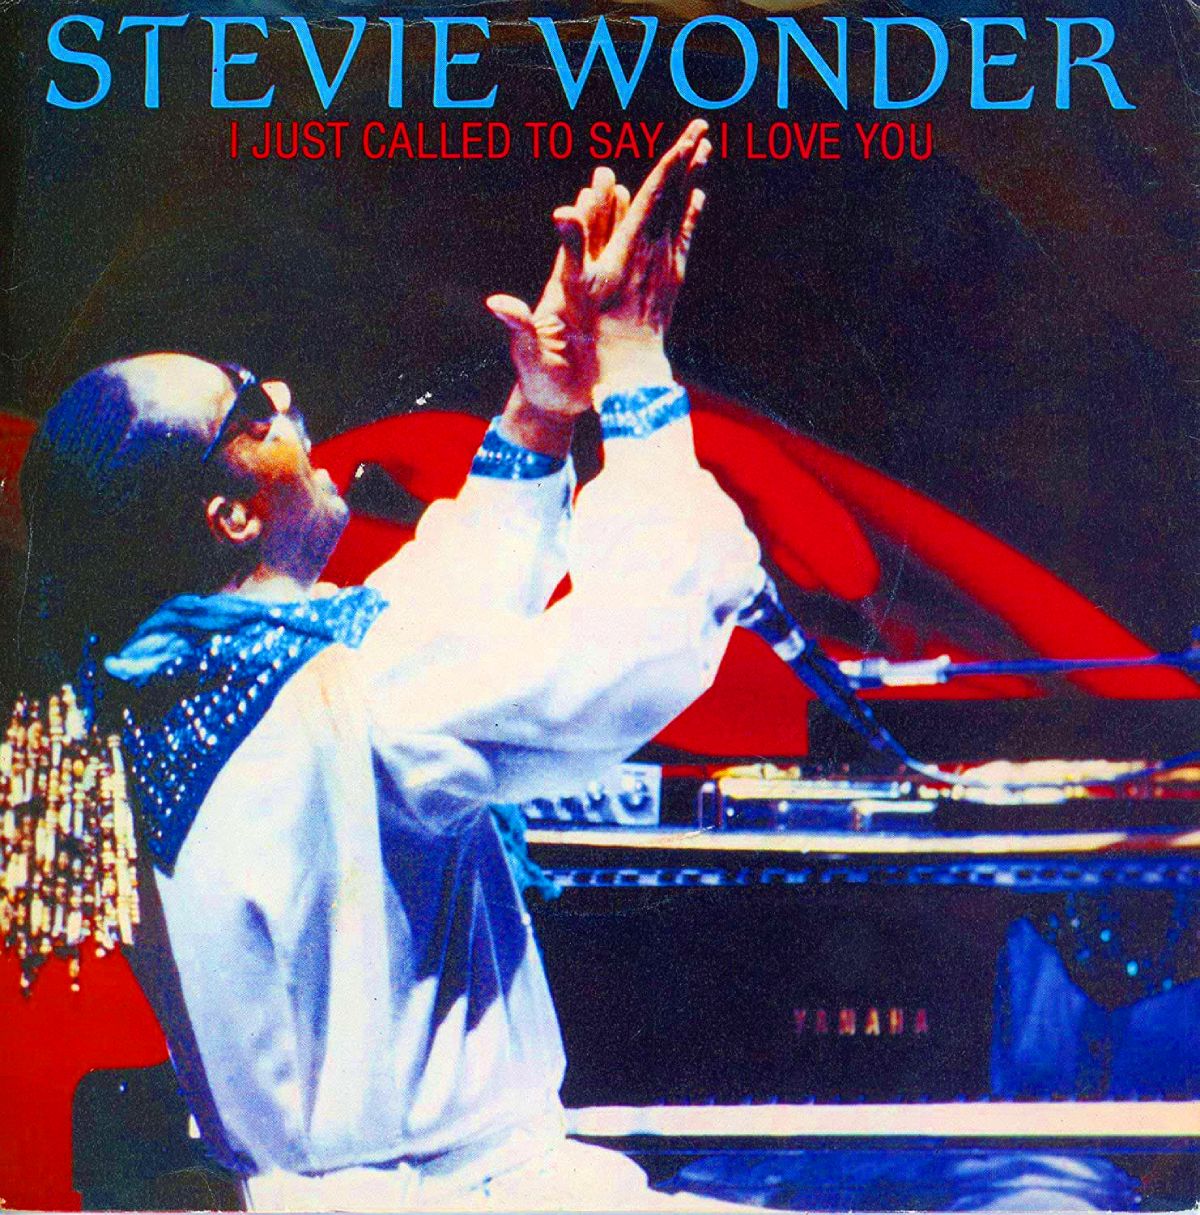 Je viens d'appeler pour te dire que je t'aime (1984) - Stevie Wonder - reprise du single